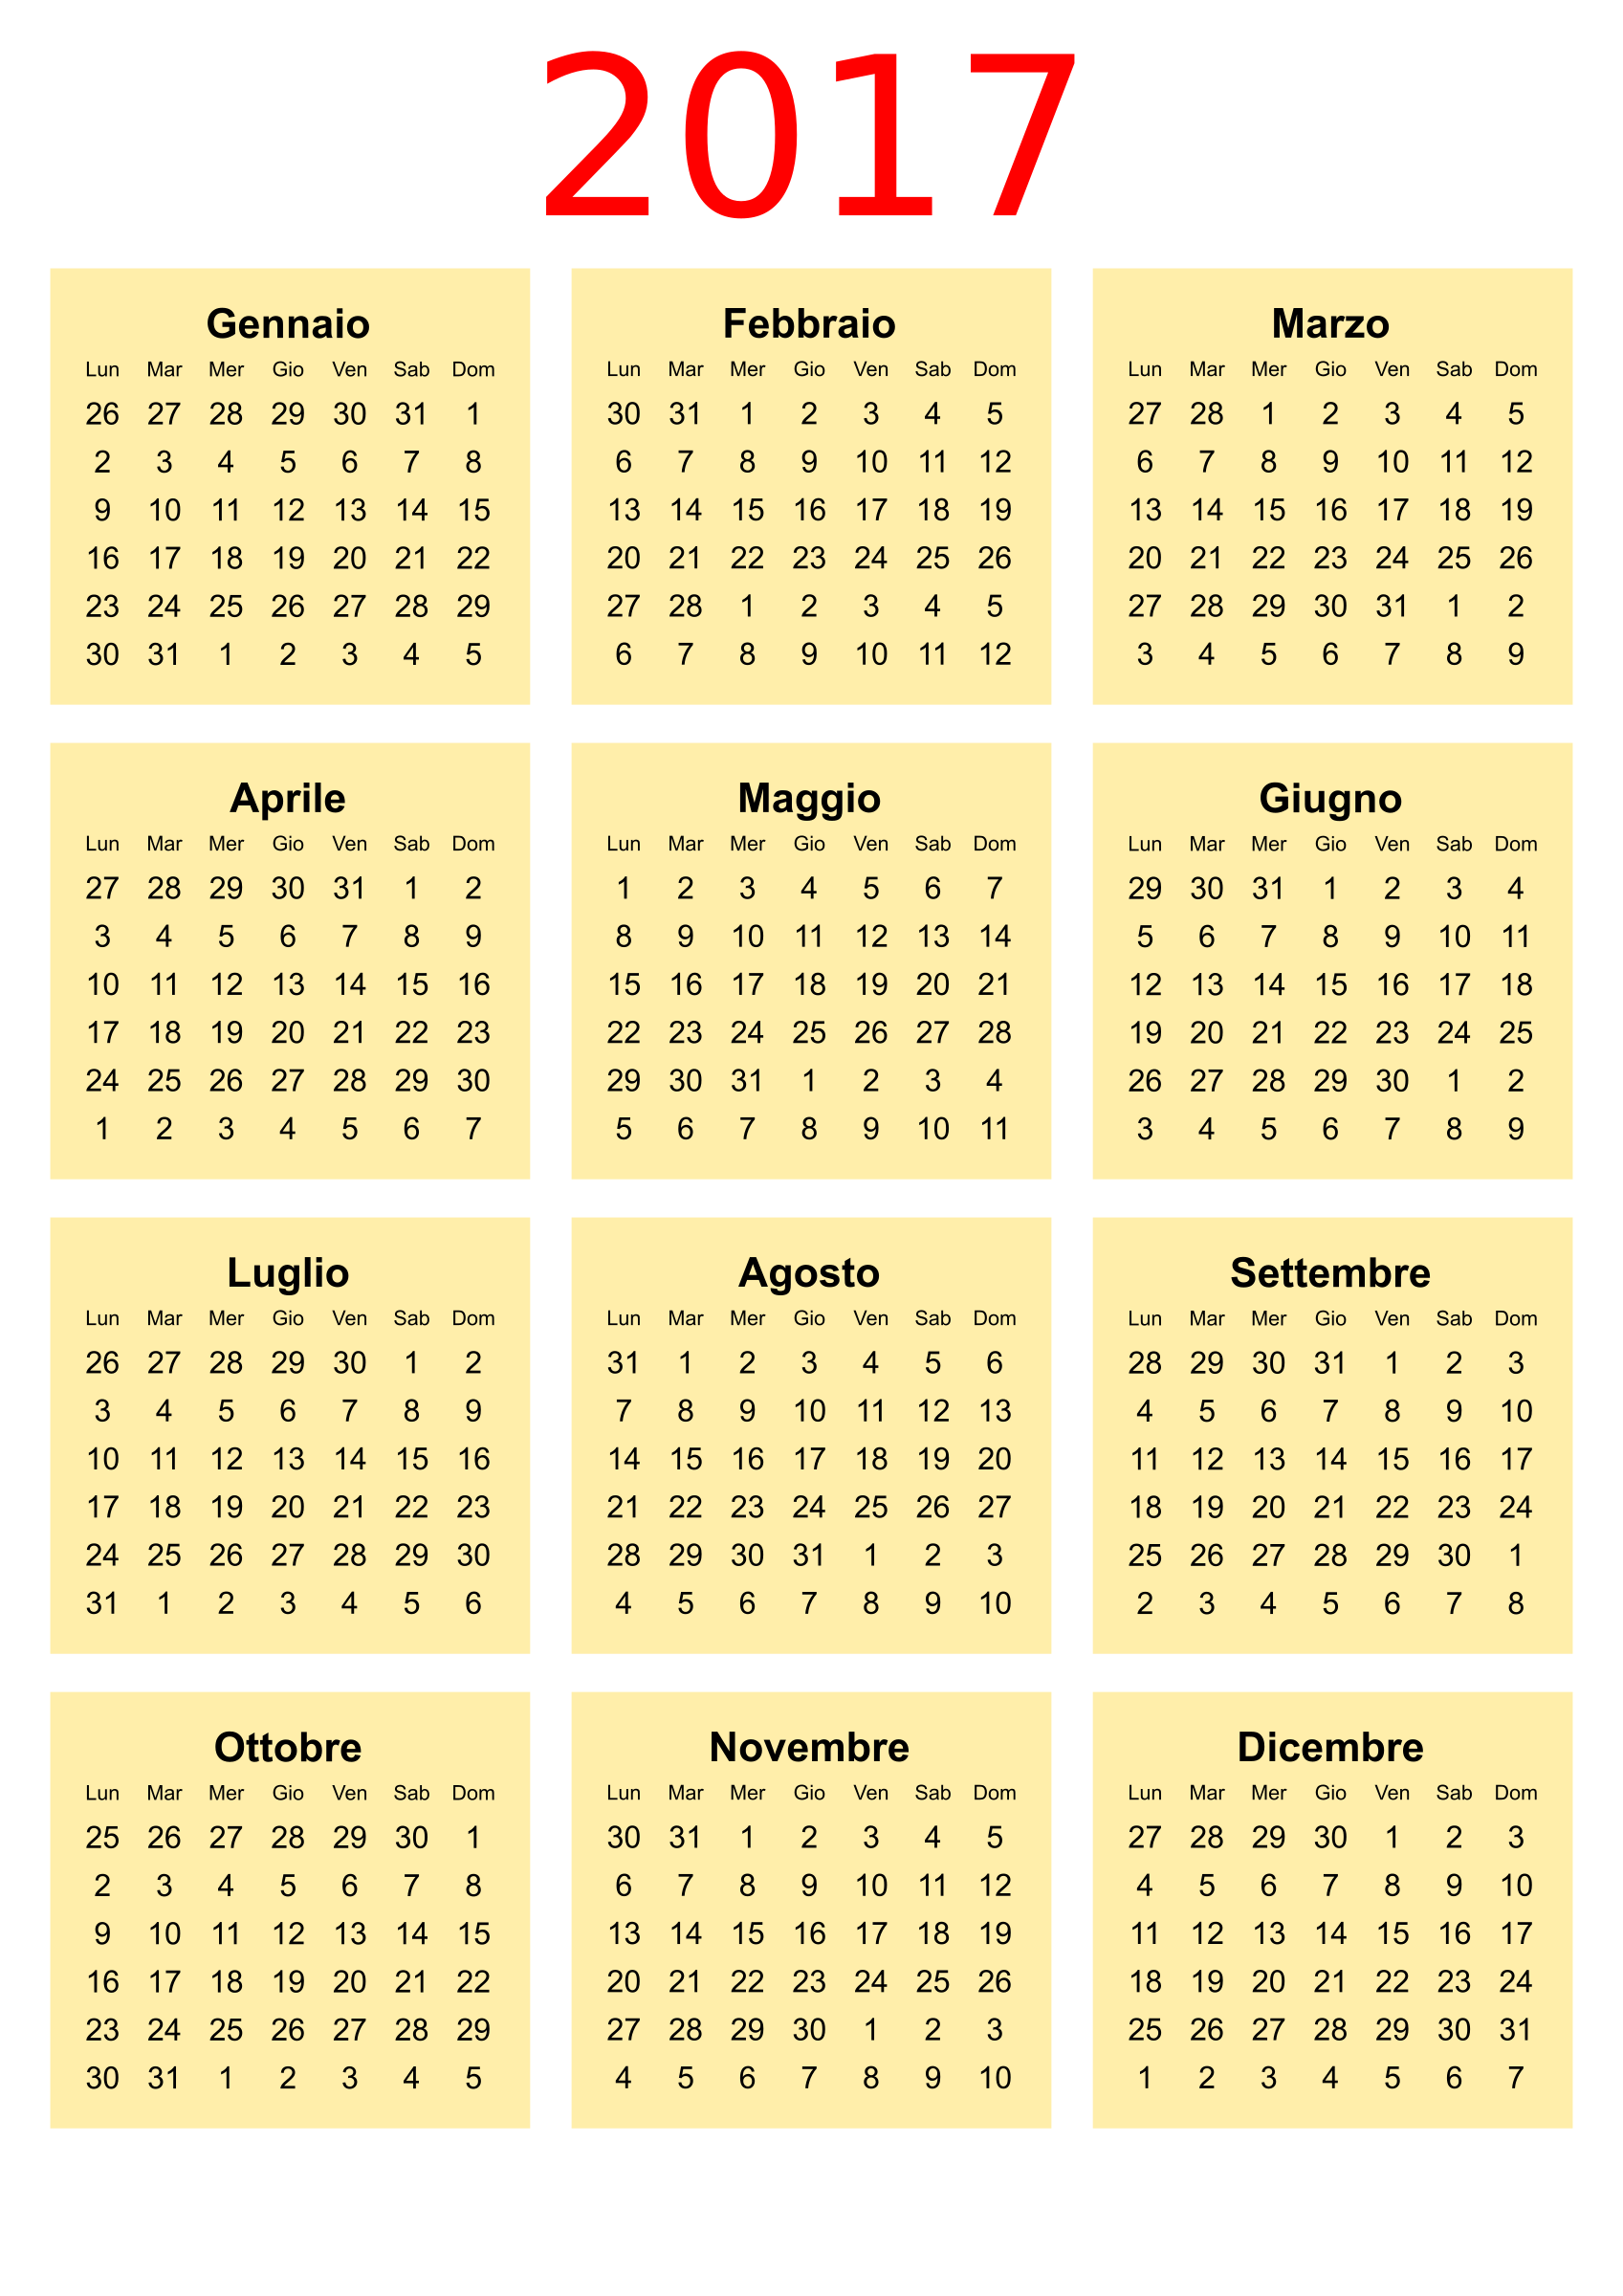 Clipart - Calendario 2017